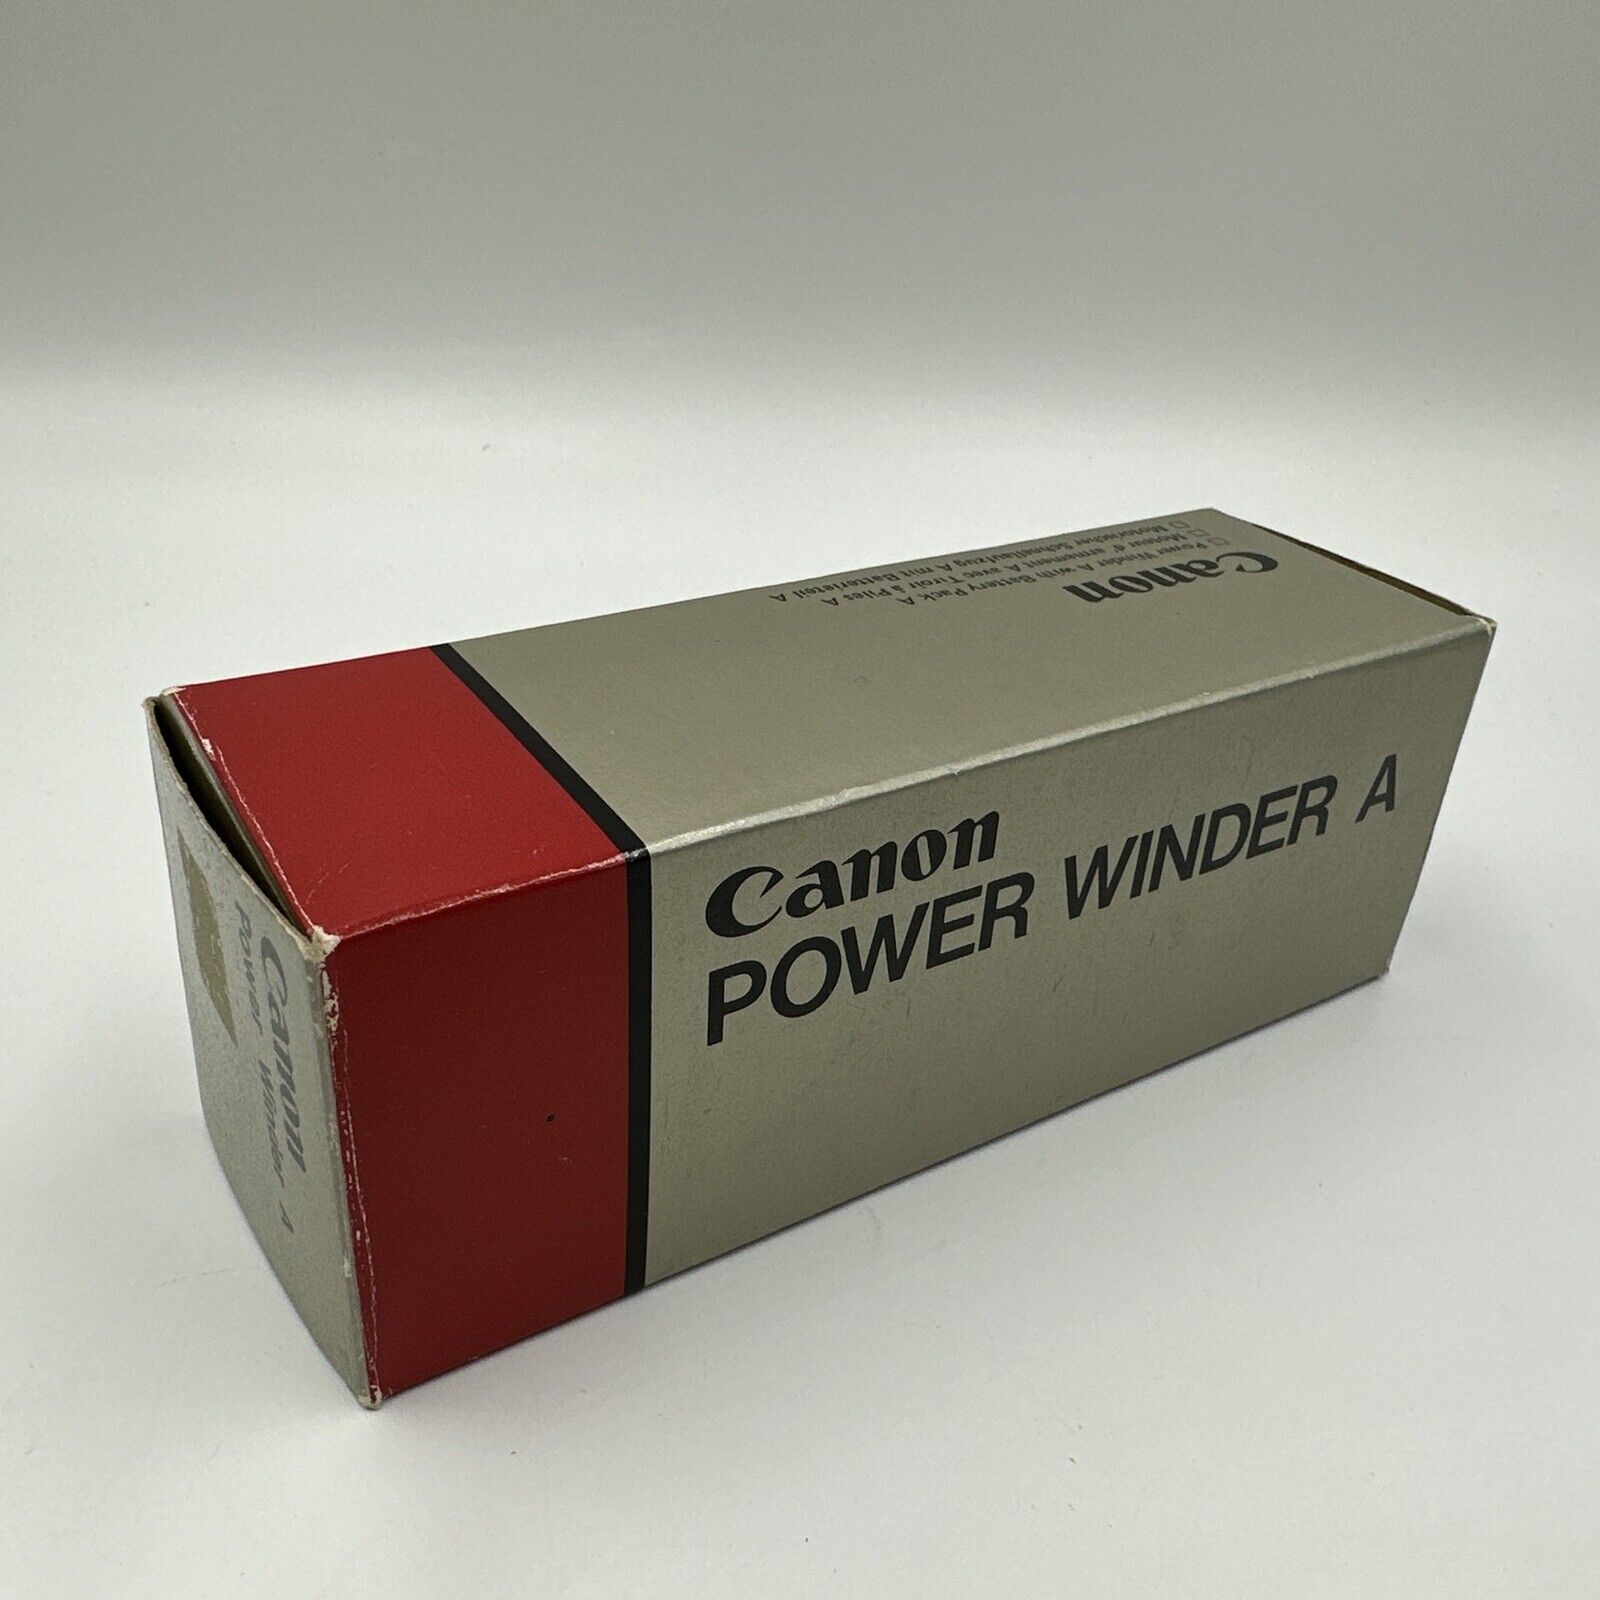 Original Canon Power Winder A for Canon SLR Cameras Canon - фотография #9